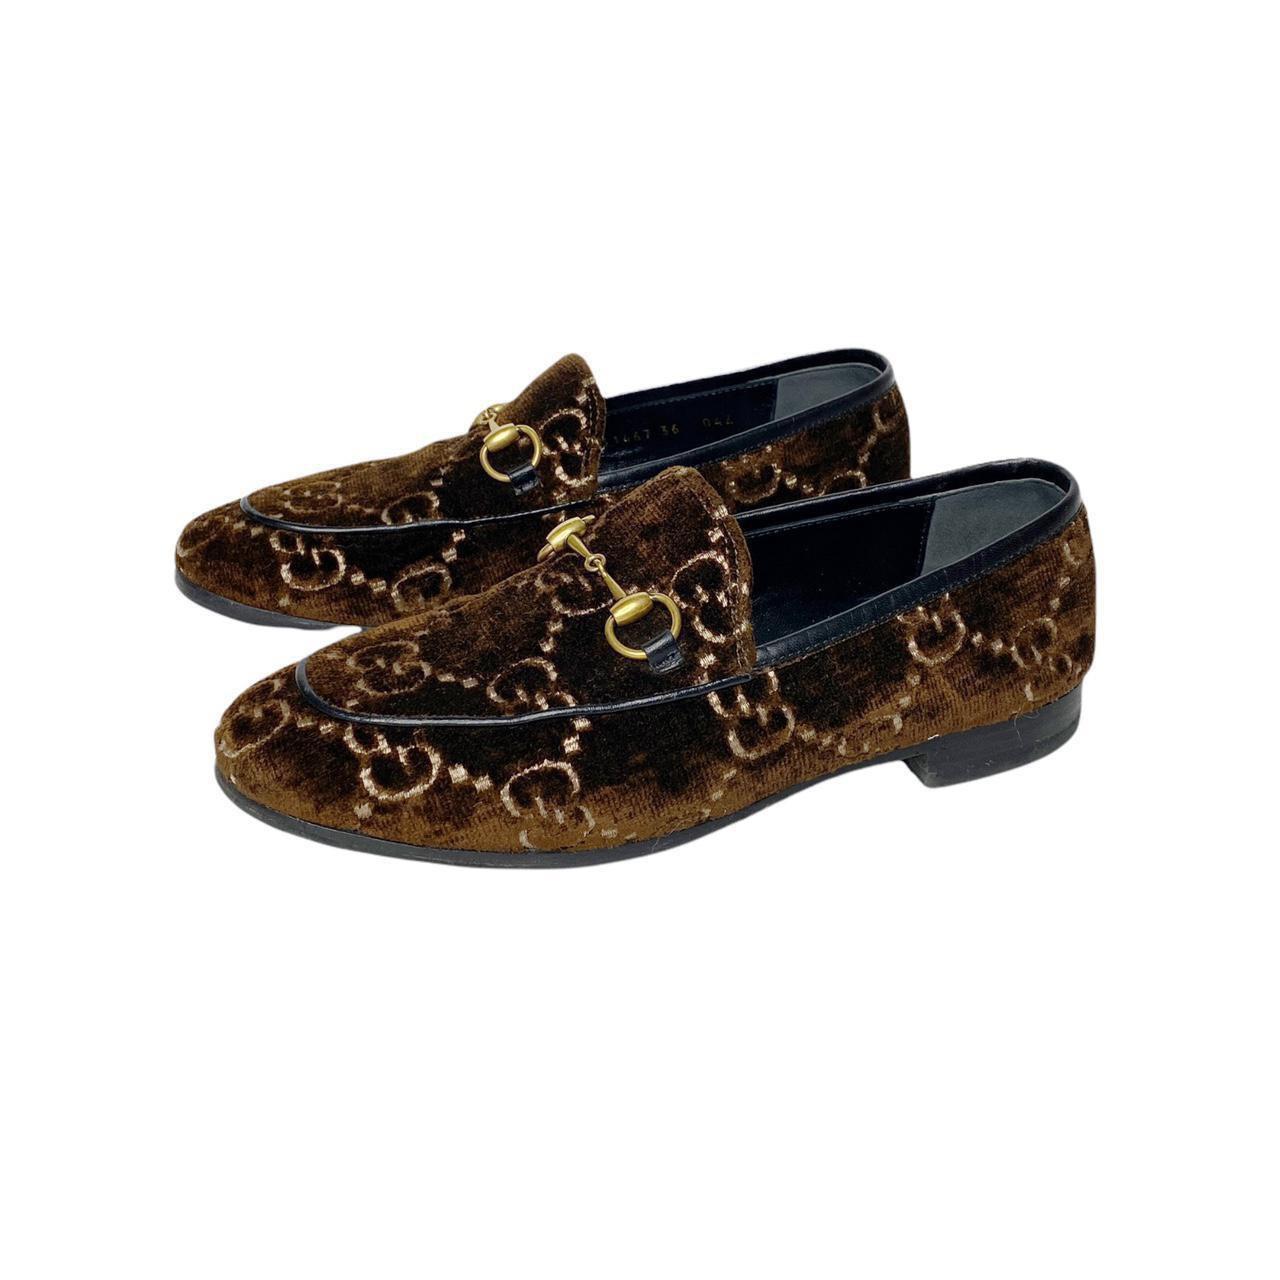 Gucci Brown Jordaan GG Samt Monogramm Loafers
Smarte klassische Designer-Schuhe

ZUSTAND: Dieser Artikel ist ein altes/vorgetragenes Stück, so dass einige Anzeichen von natürlichem Verschleiß und Alter zu erwarten sind, jedoch in gutem